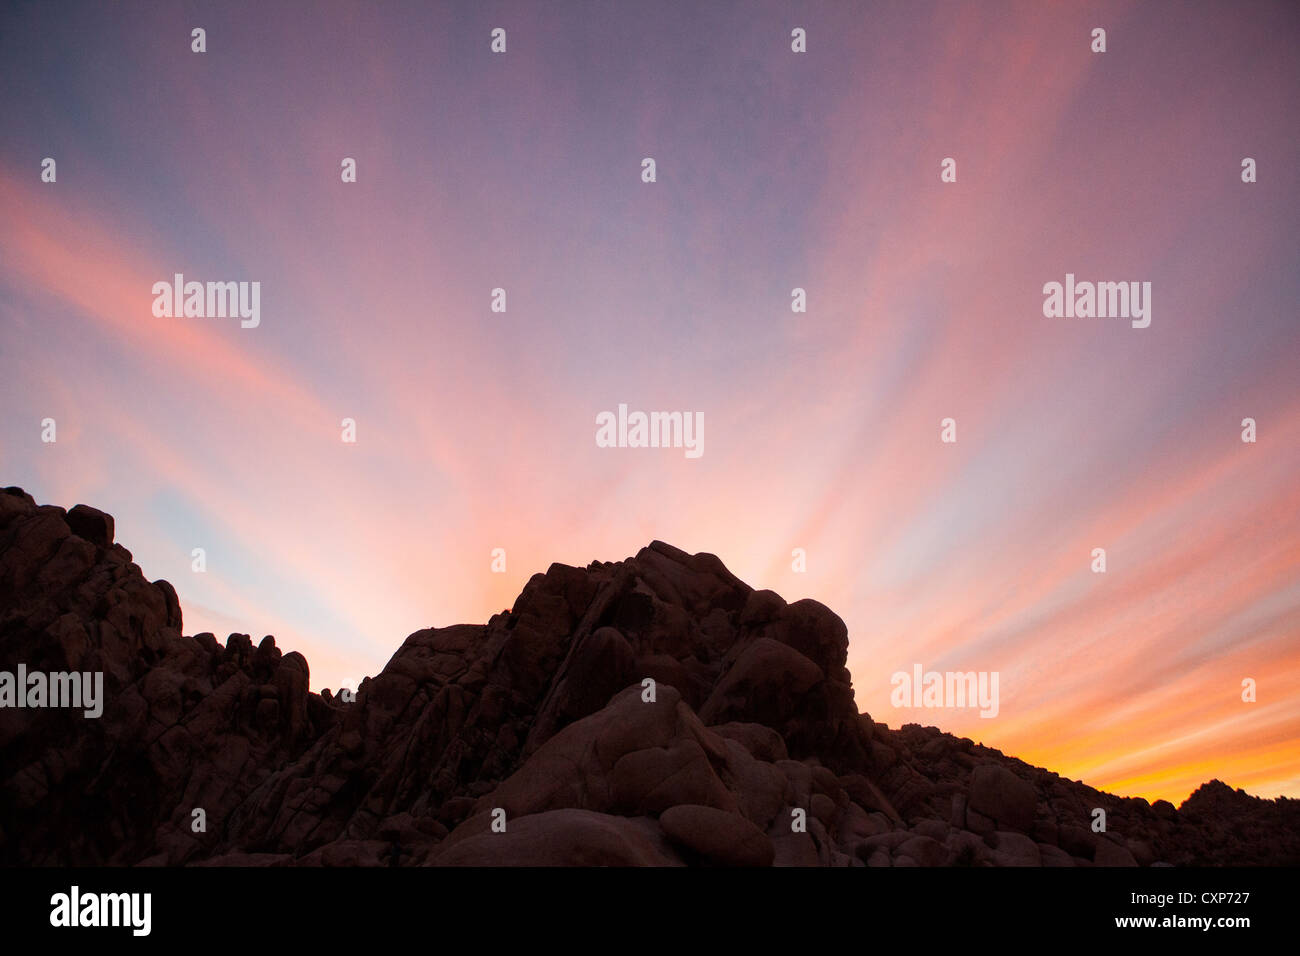 Drammatico tramonto nel deserto con silhouette di rocce e montagne. Foto Stock